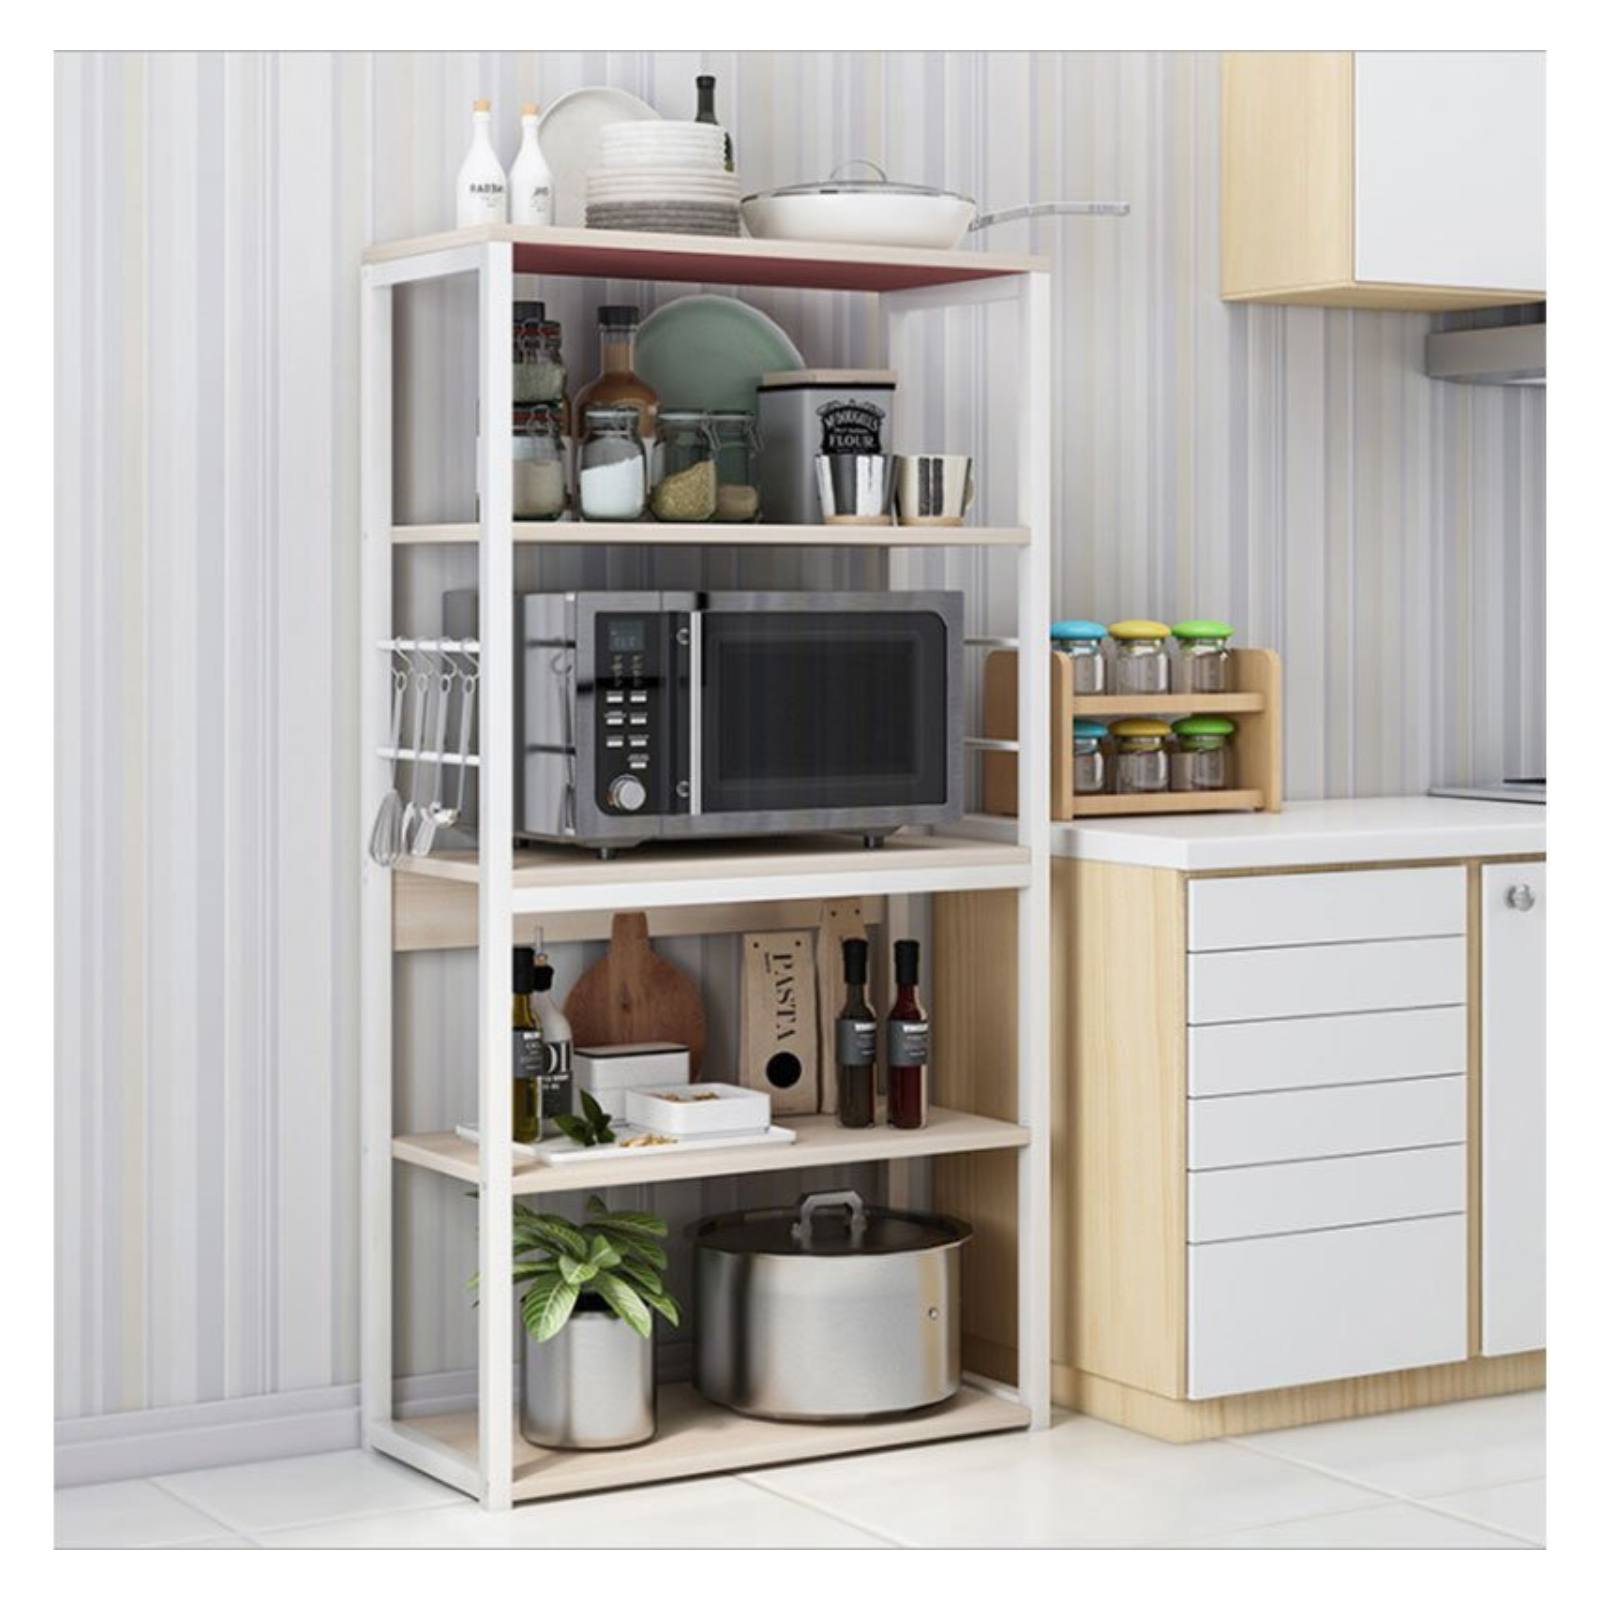 https://meyvaser.com/8227-Niara-Mod_thickbox/estanteria-de-cocina-alta-con-marco-de-metal-blanco-estante-para-microondas-50x30x130-cm-color-natural-y-blanco2x.jpg